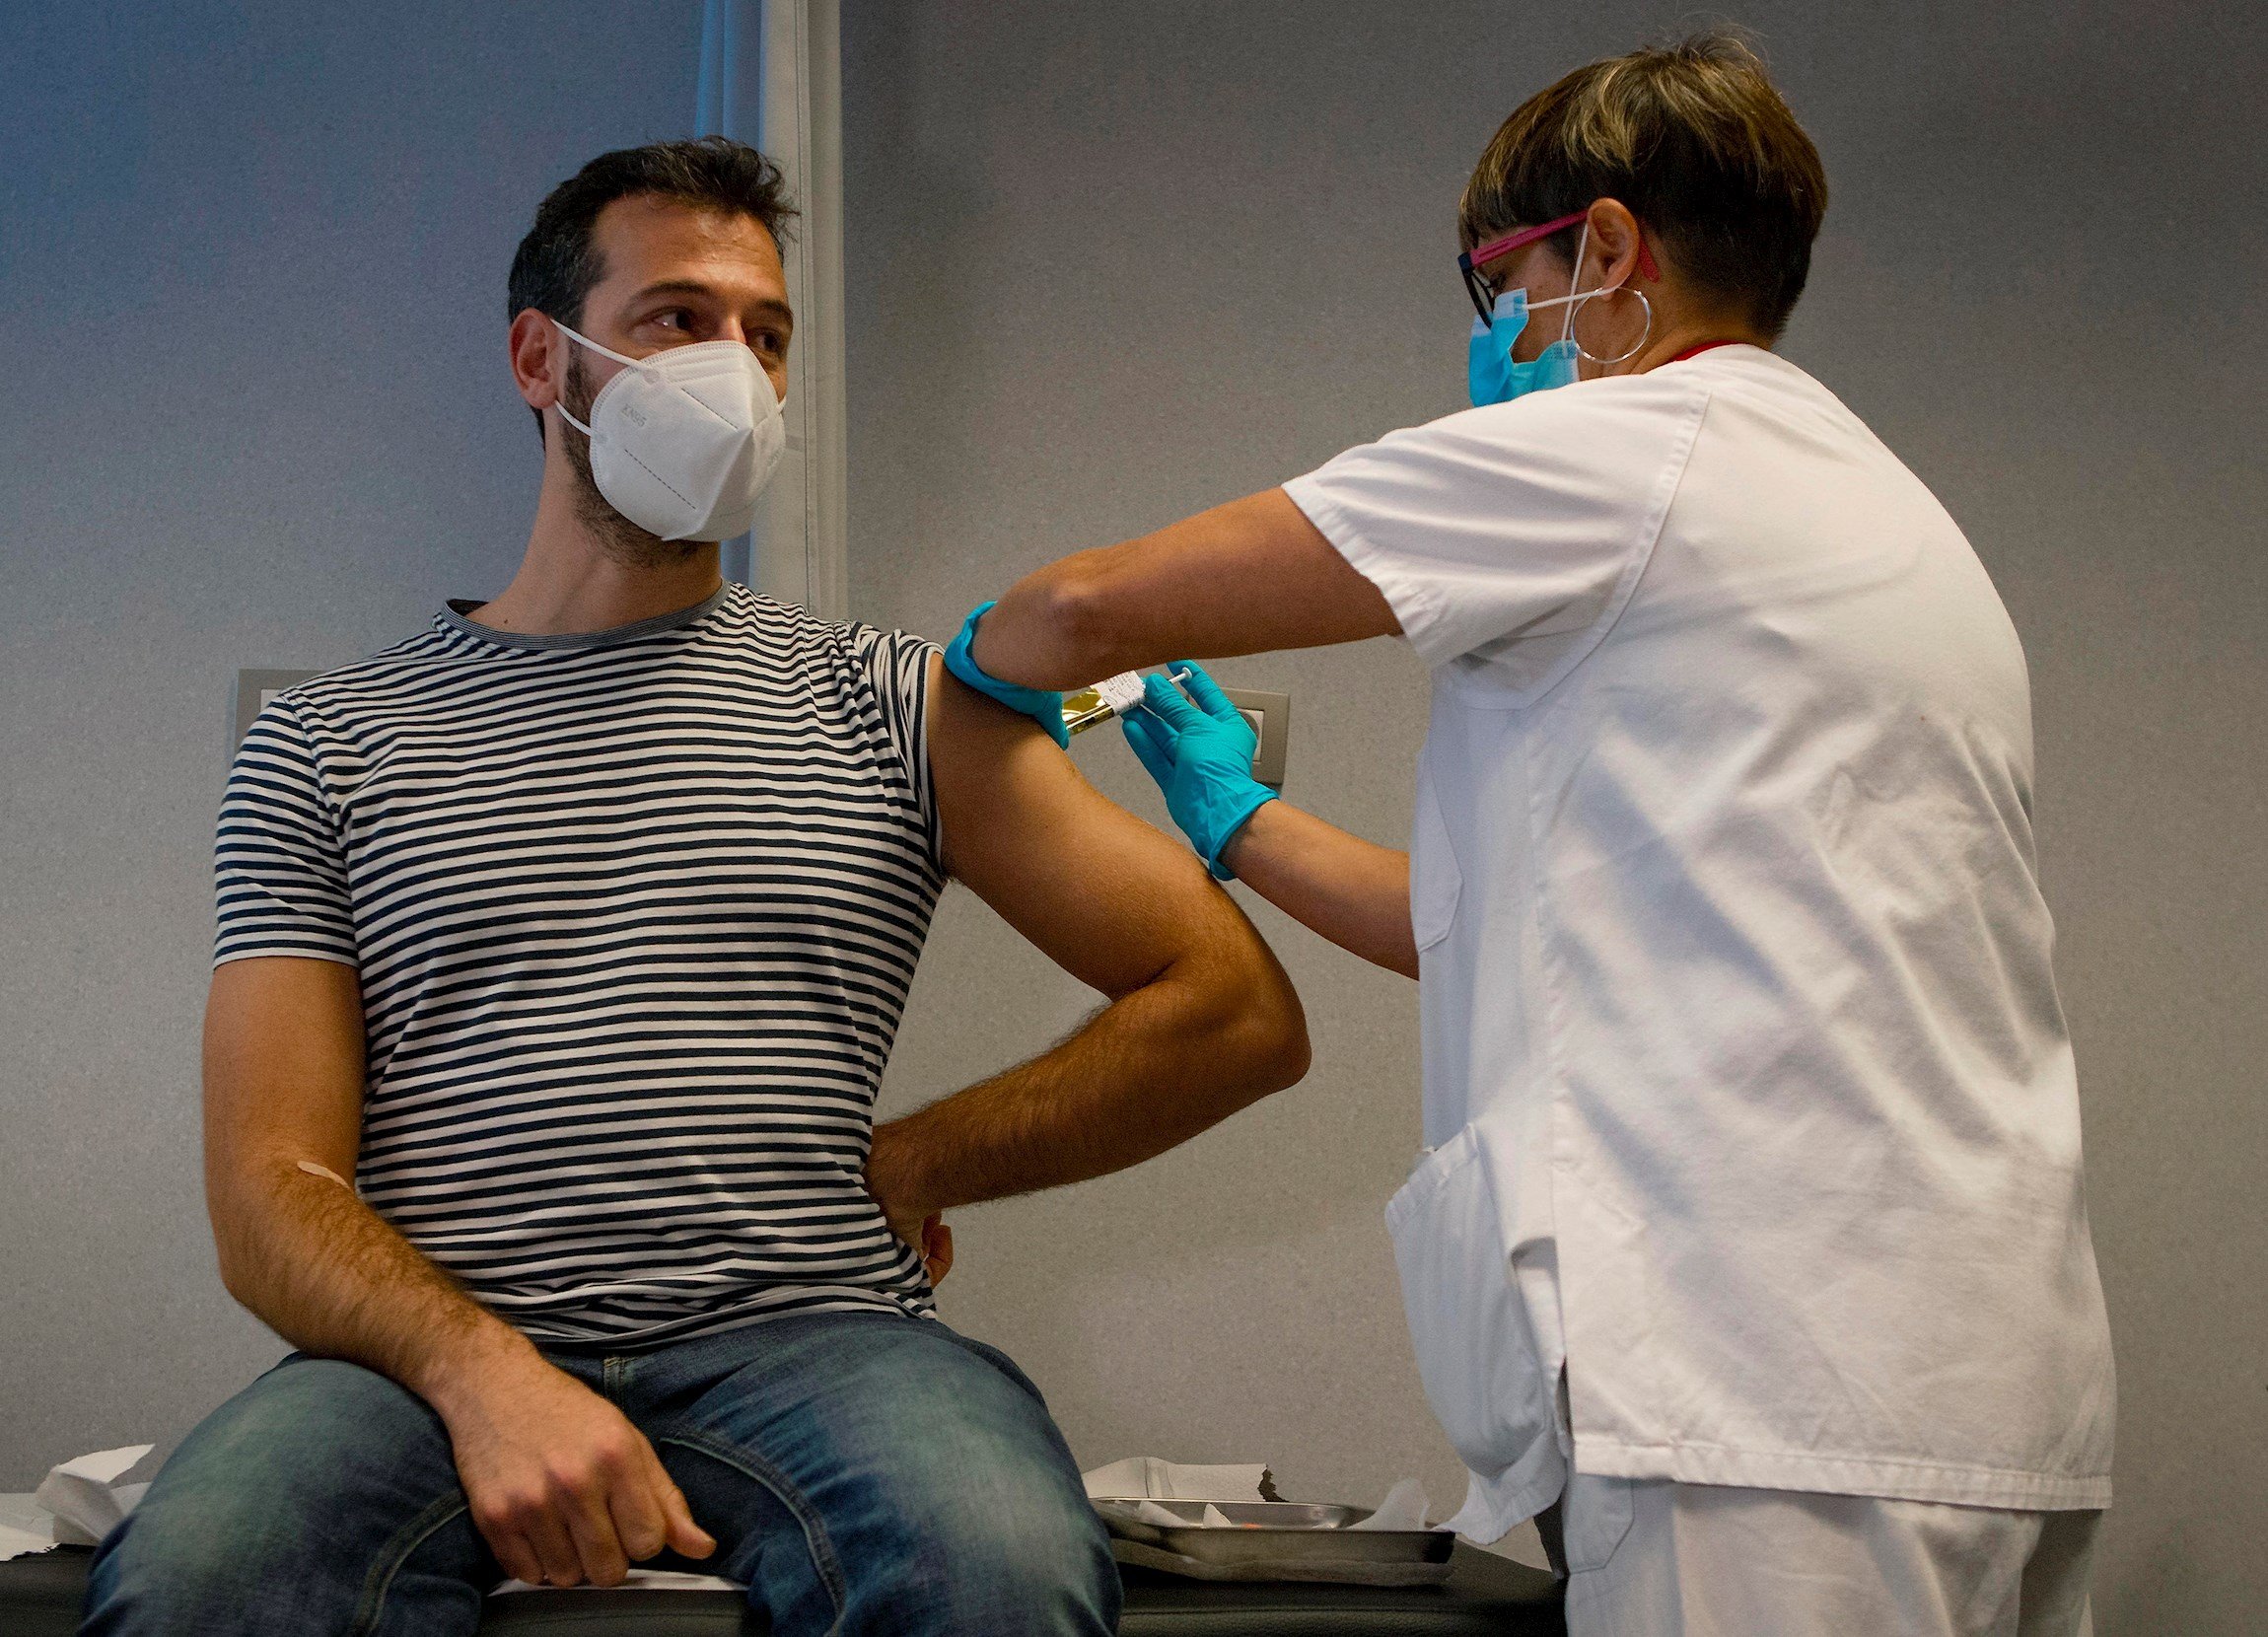 El 28% dels espanyols no estan disposats a vacunar-se immediatament